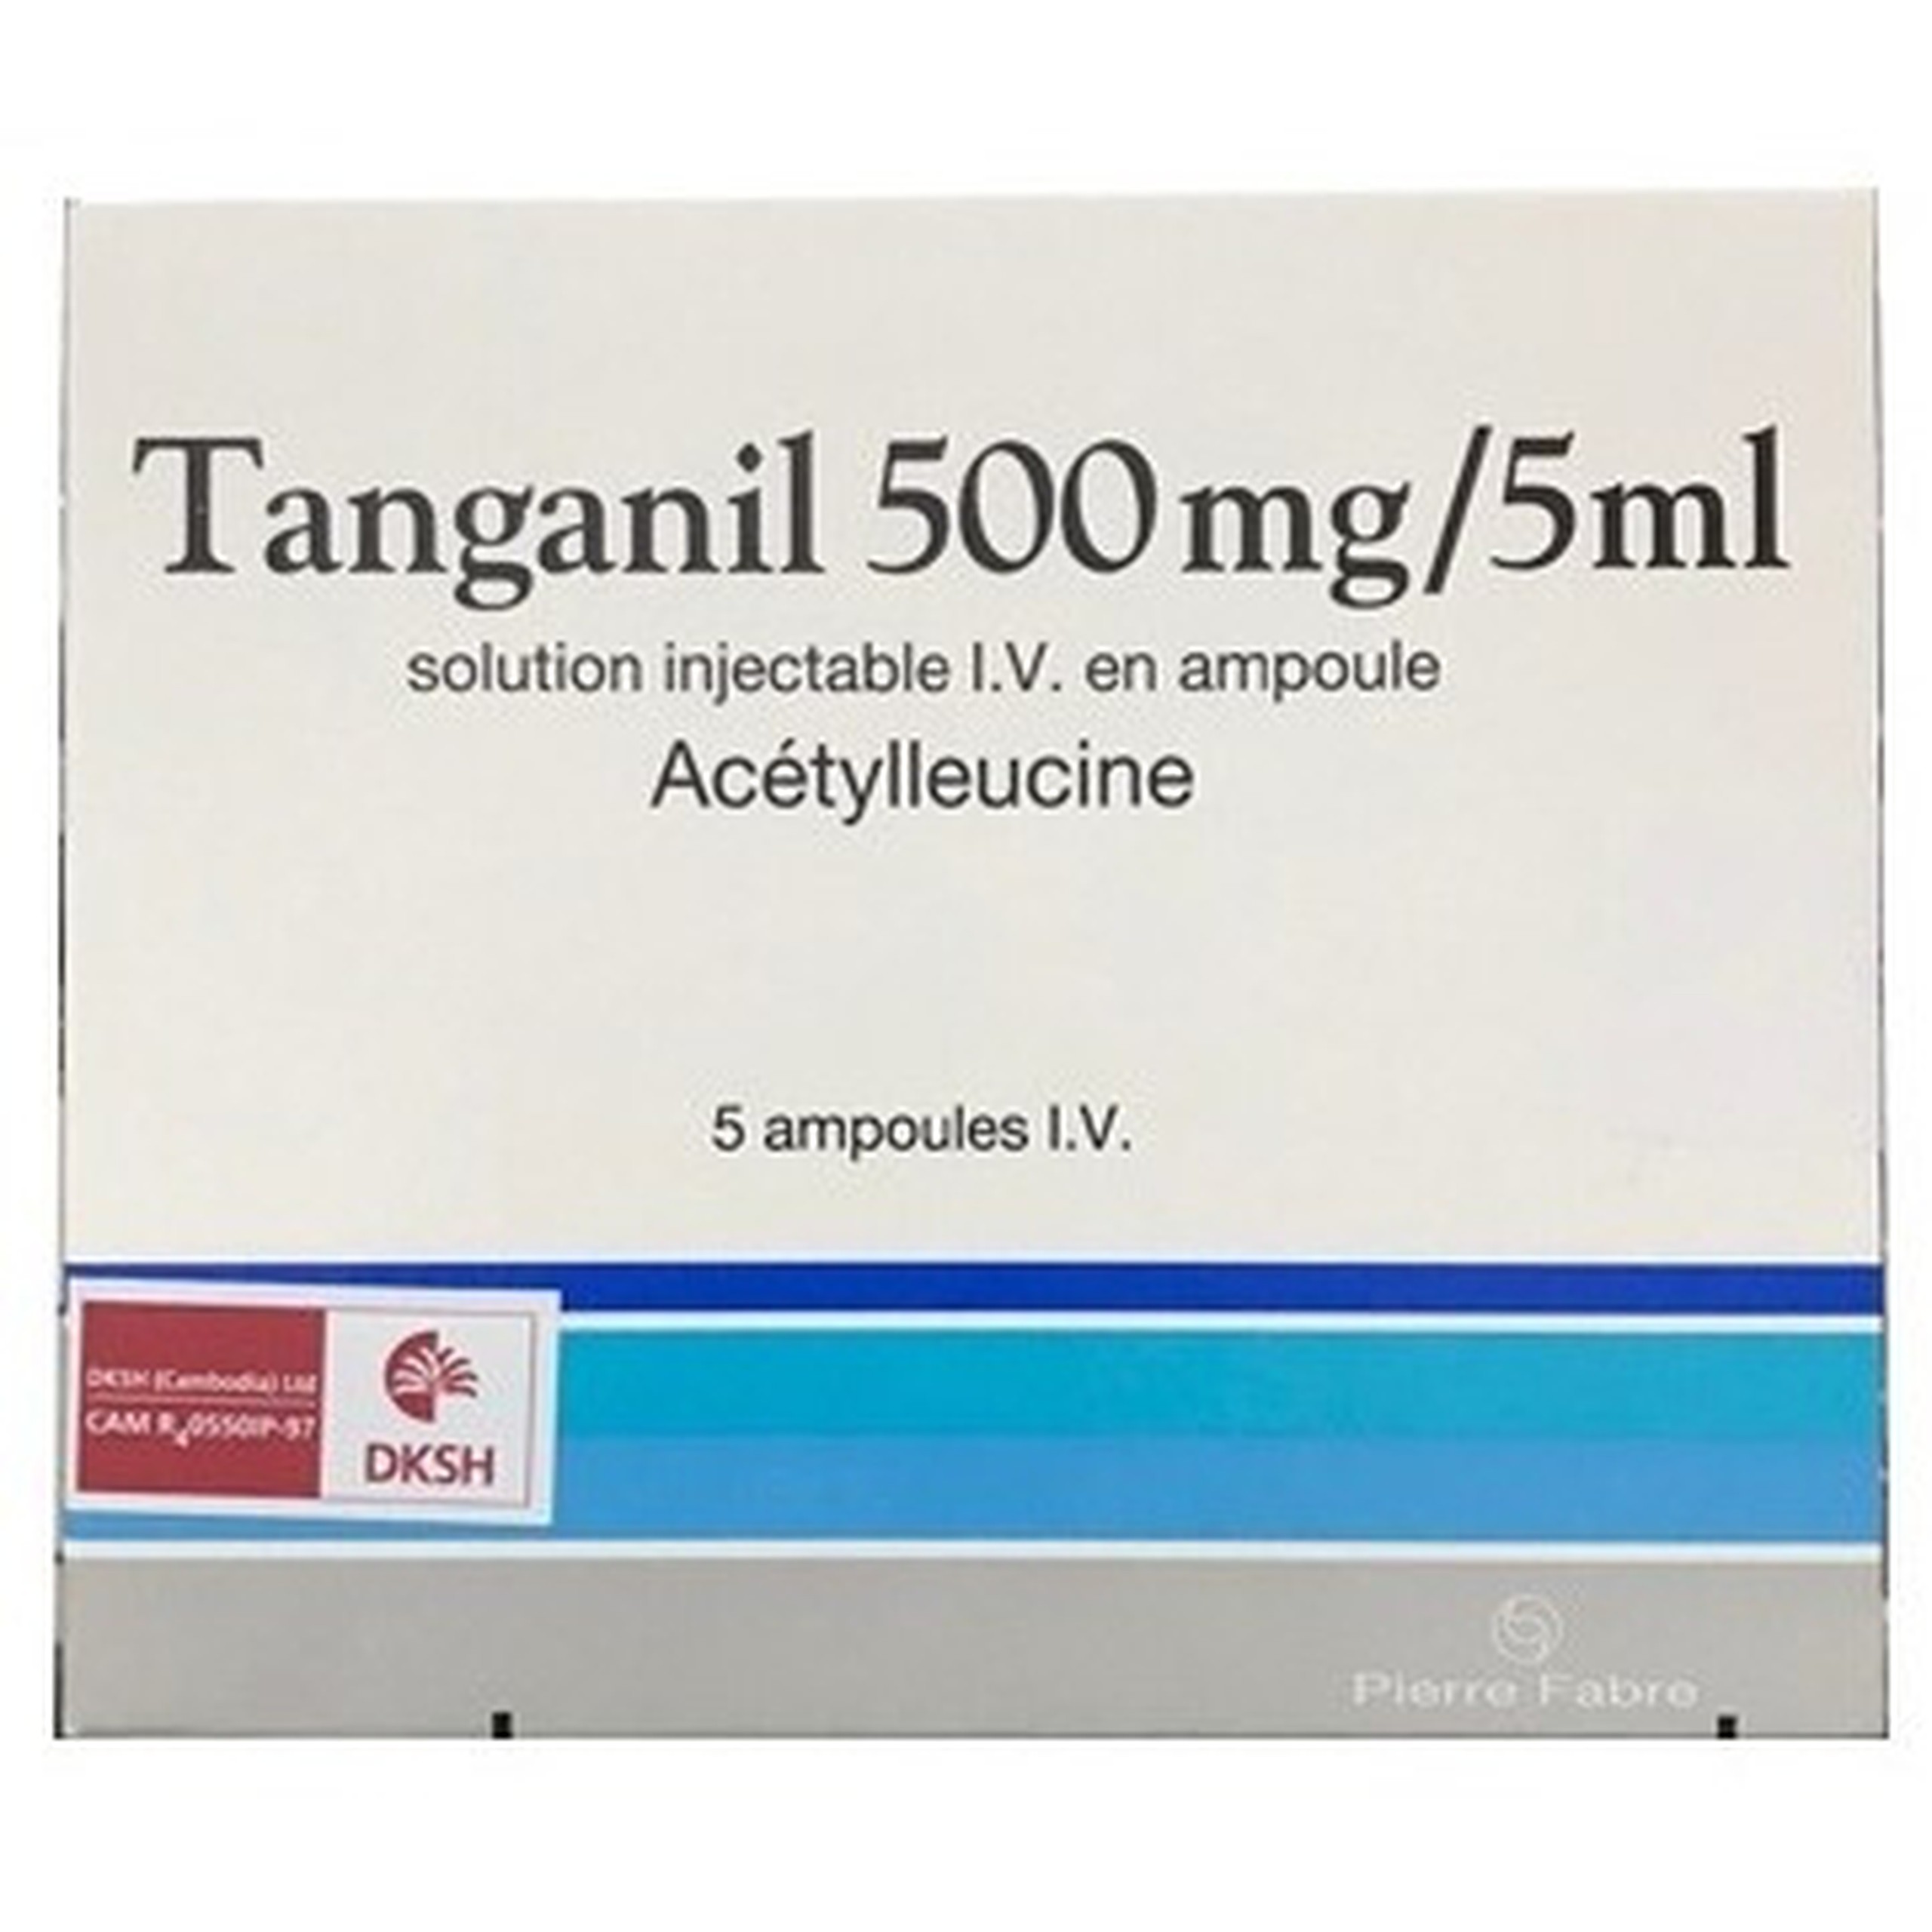 Thuốc tiêm Tanganil 500mg/5ml Pierre Fabre điều trị triệu chứng các cơn chóng mặt (1 vỉ x 5 ống x 25ml) 